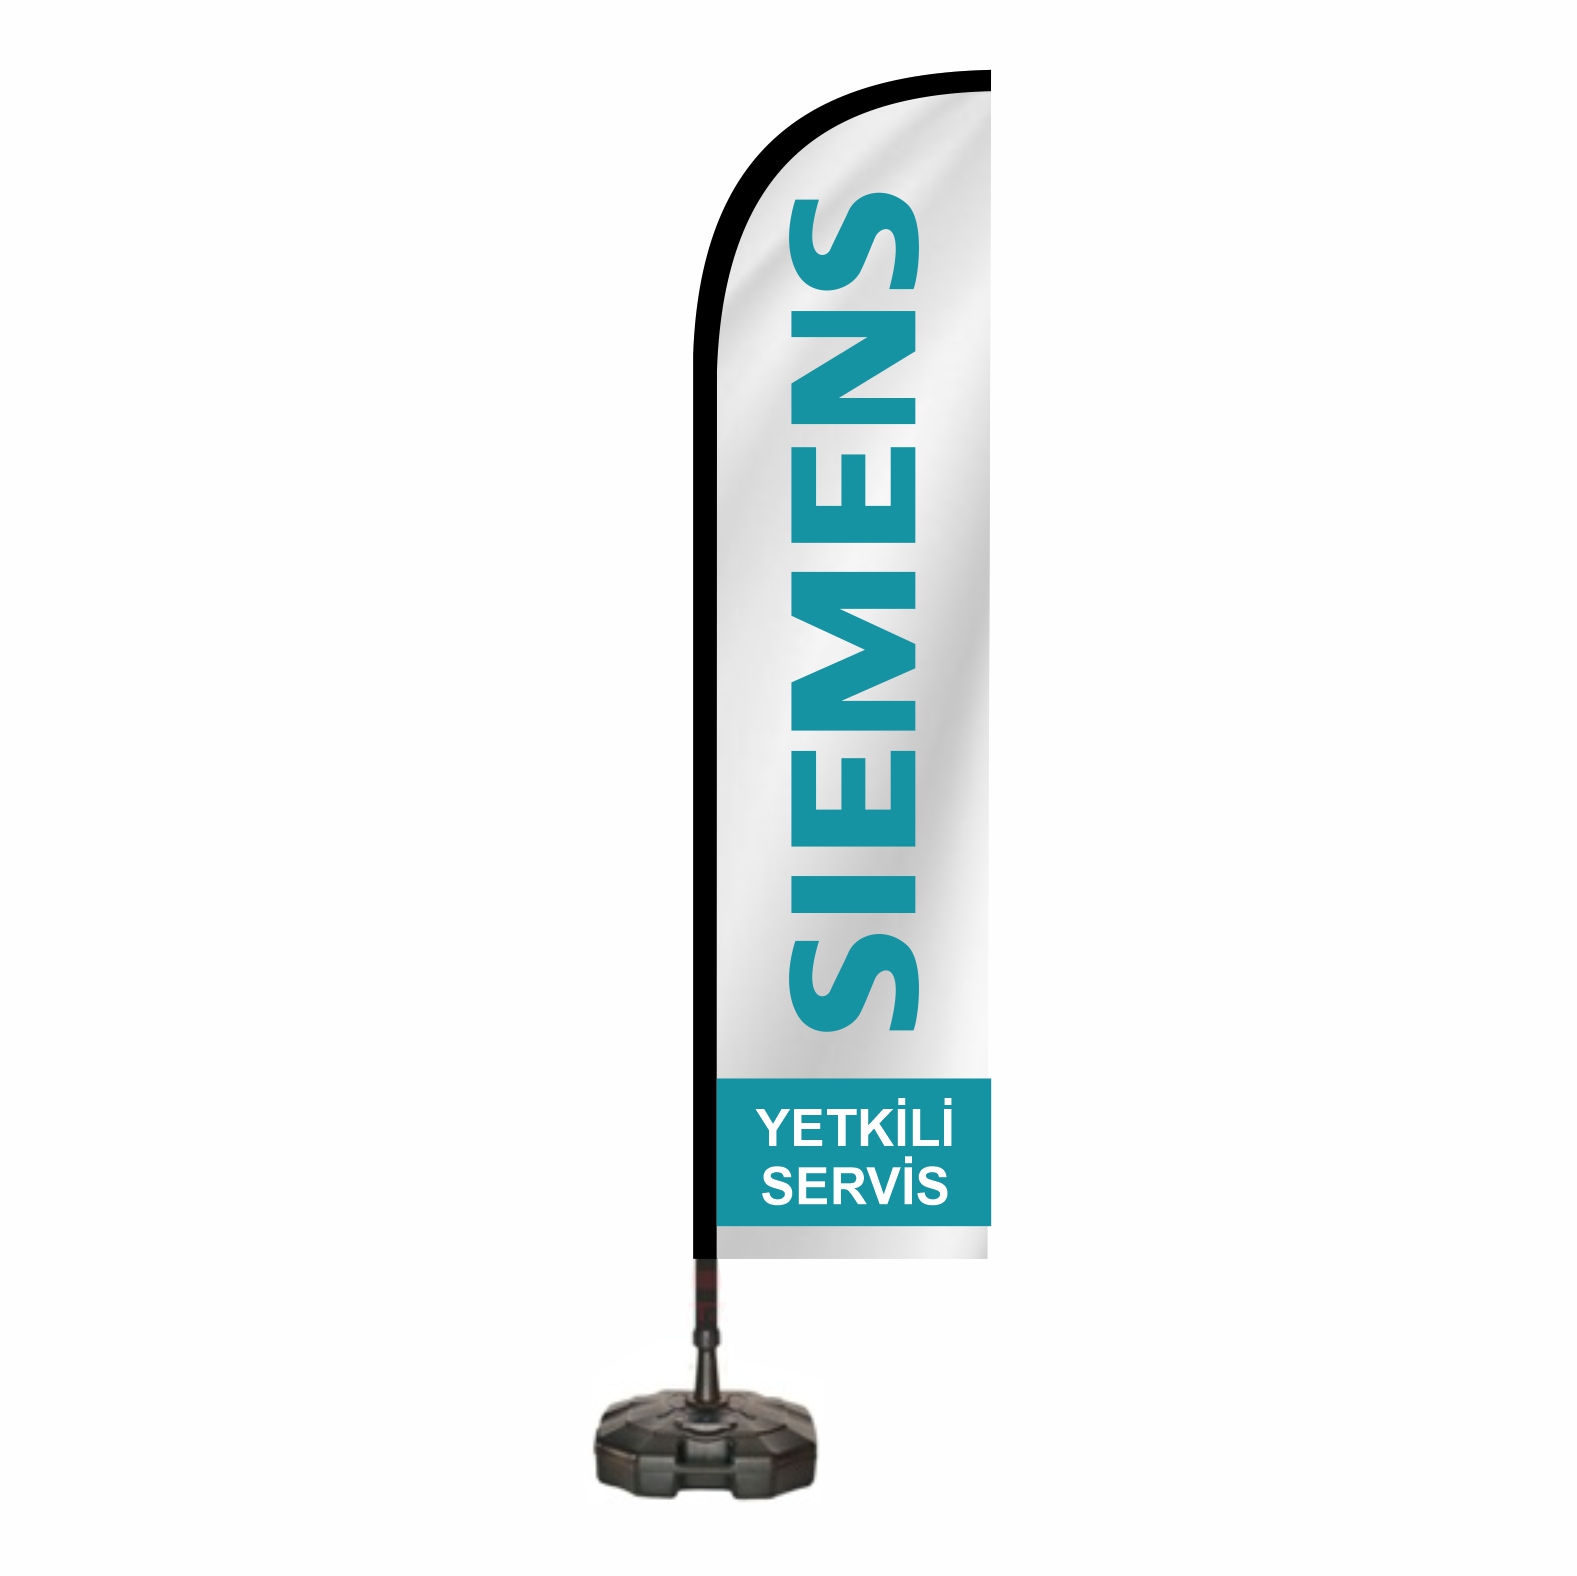 Siemens Plaj Bayraklar Fiyat